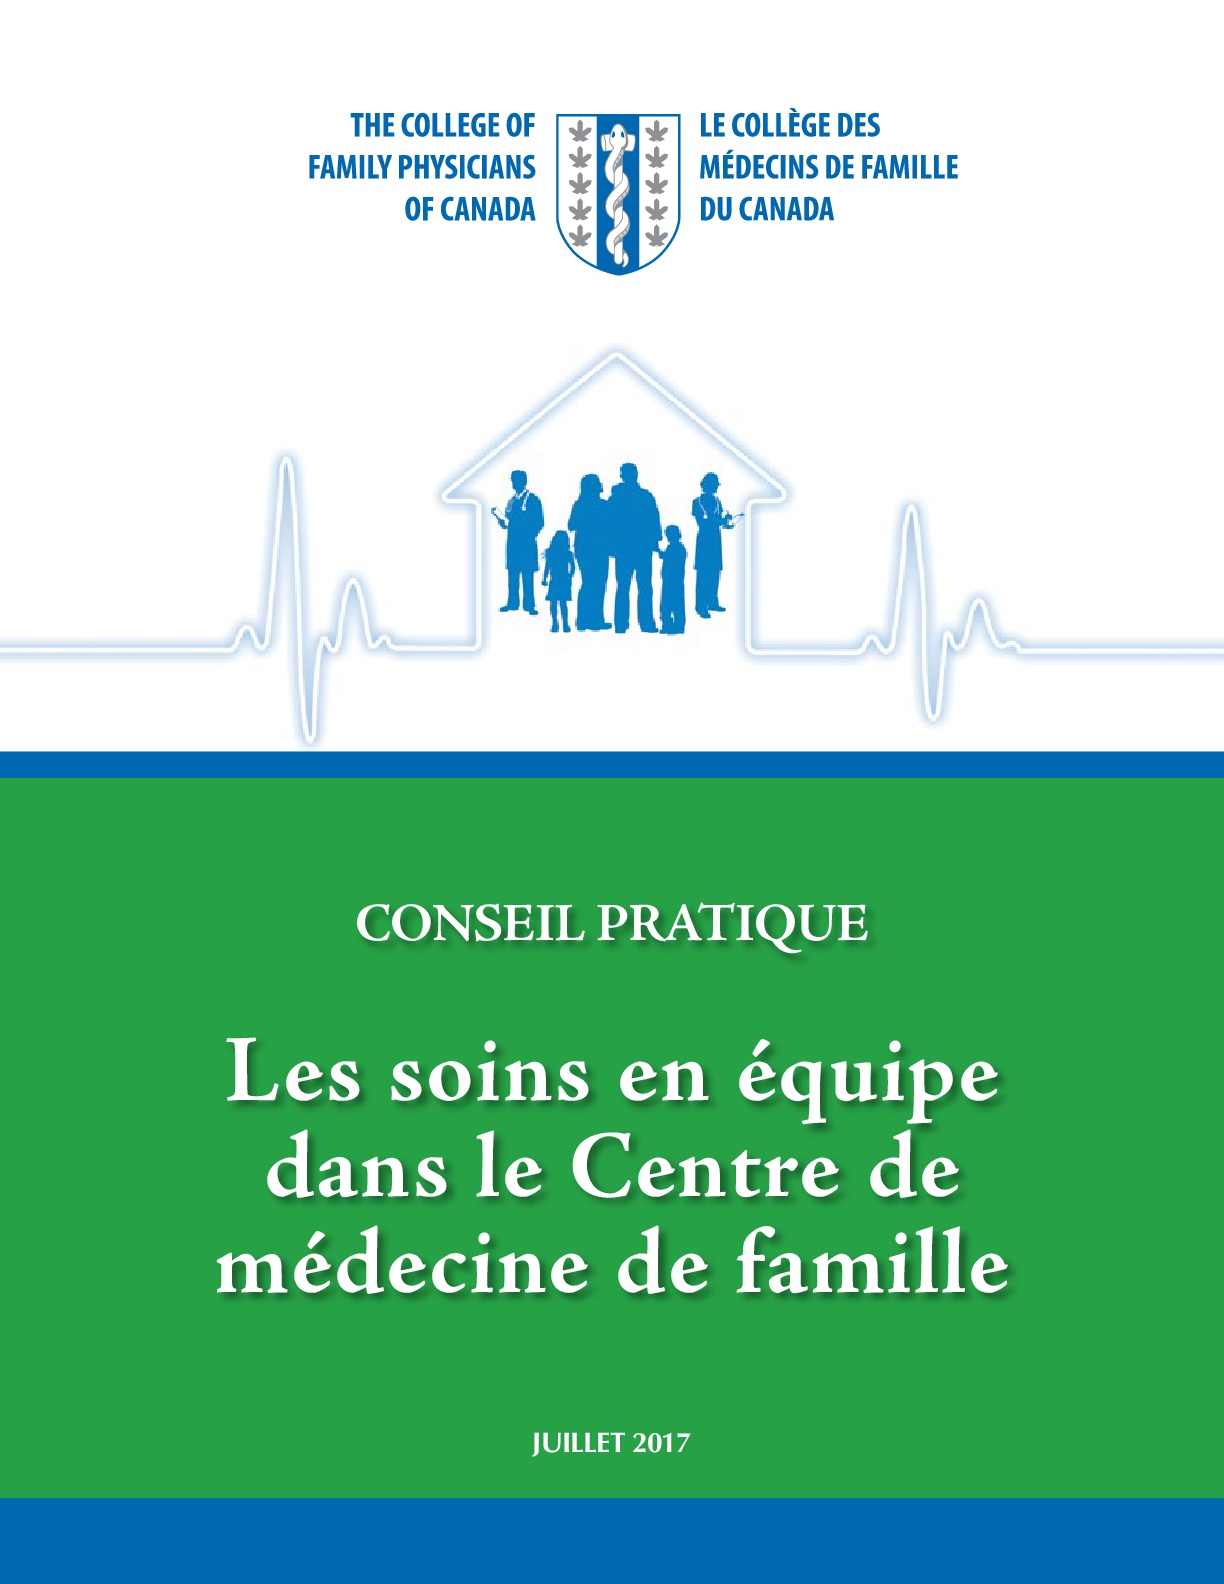 Thumbnail for Conseil pratique: Les soins en équipe dans le Centre de médecine de famille